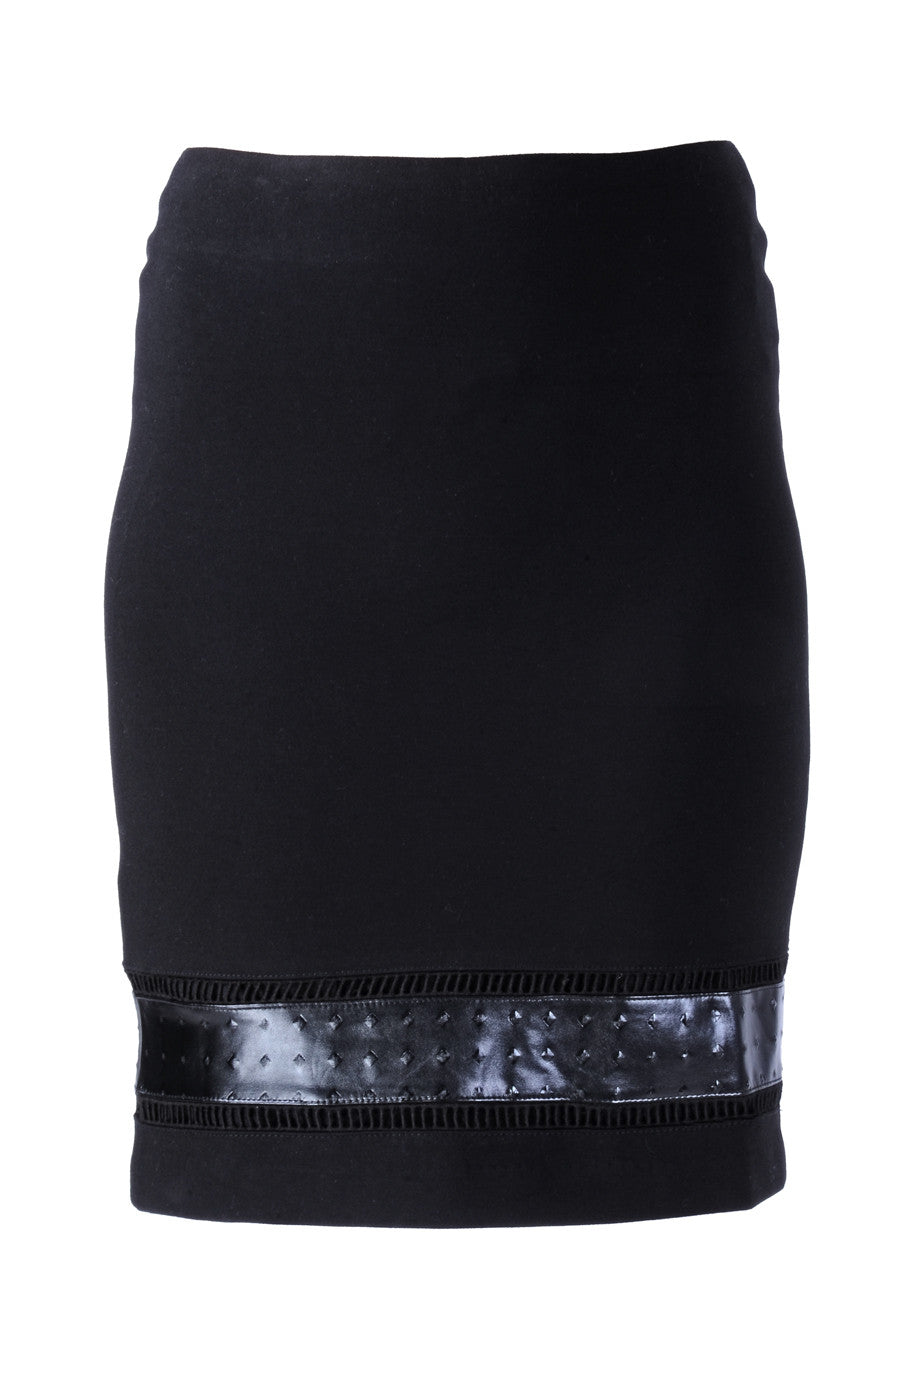 Μαύρη Φούστα με Δερμάτινο Σχέδιο | Φούστες